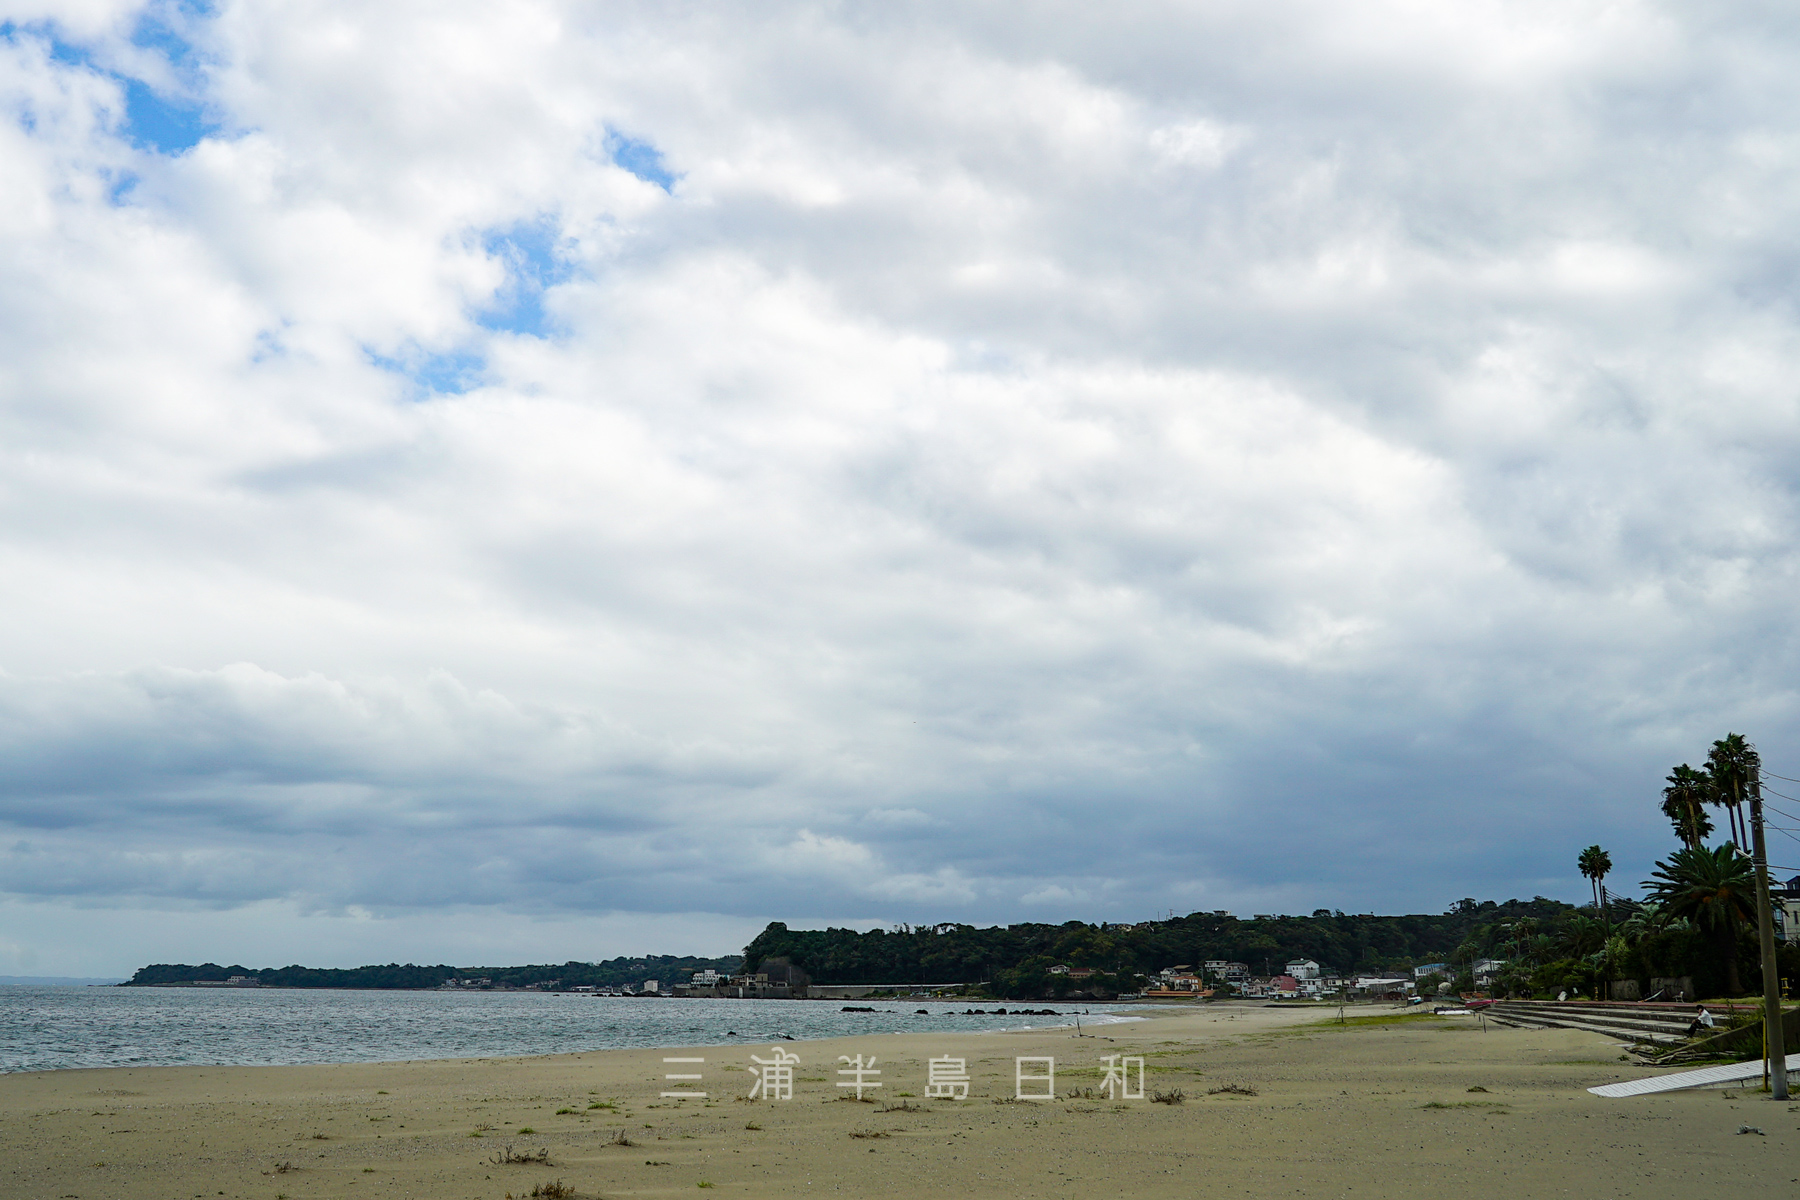 菊名海岸 無料駐車場もある三浦海岸の南に続くビーチ